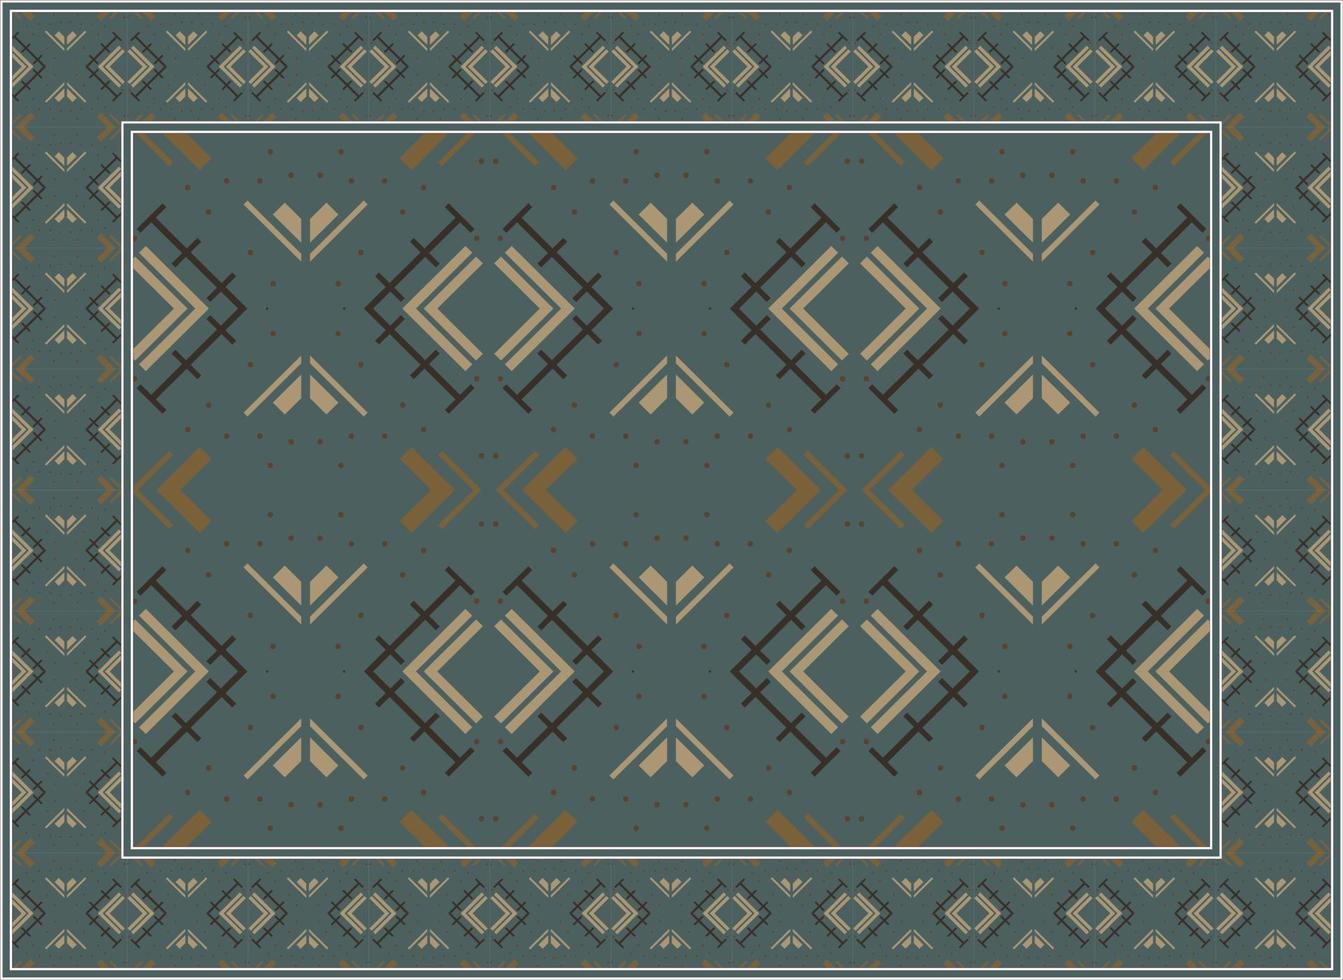 persisk matta mönster, afrikansk motiv scandinavian persisk matta modern afrikansk etnisk aztec stil design för skriva ut tyg mattor, handdukar, näsdukar, halsdukar matta, vektor